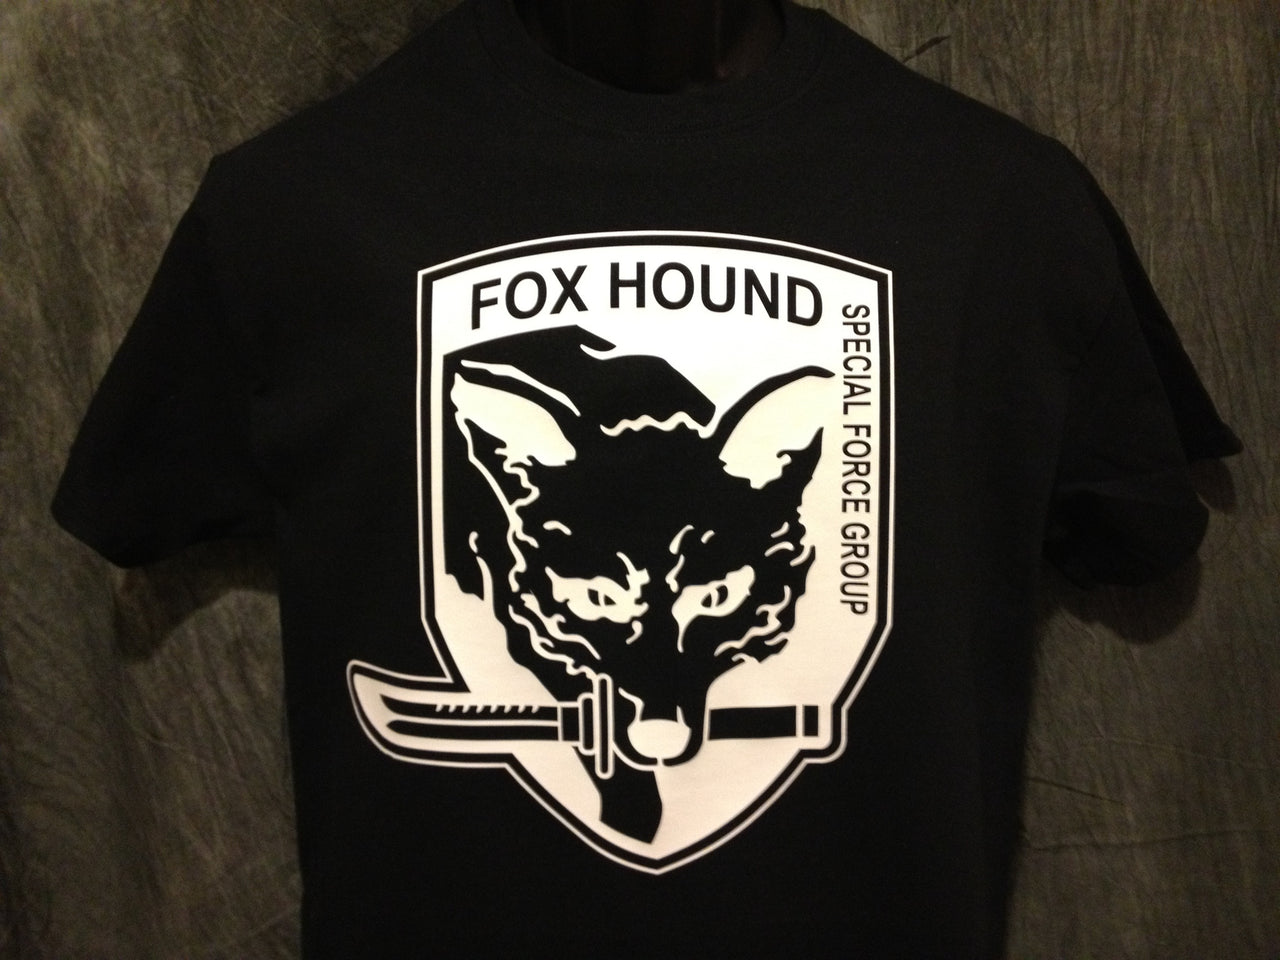 Metal Gear Solid Foxhound Tshirt: Black With White Print - TshirtNow.net - 2